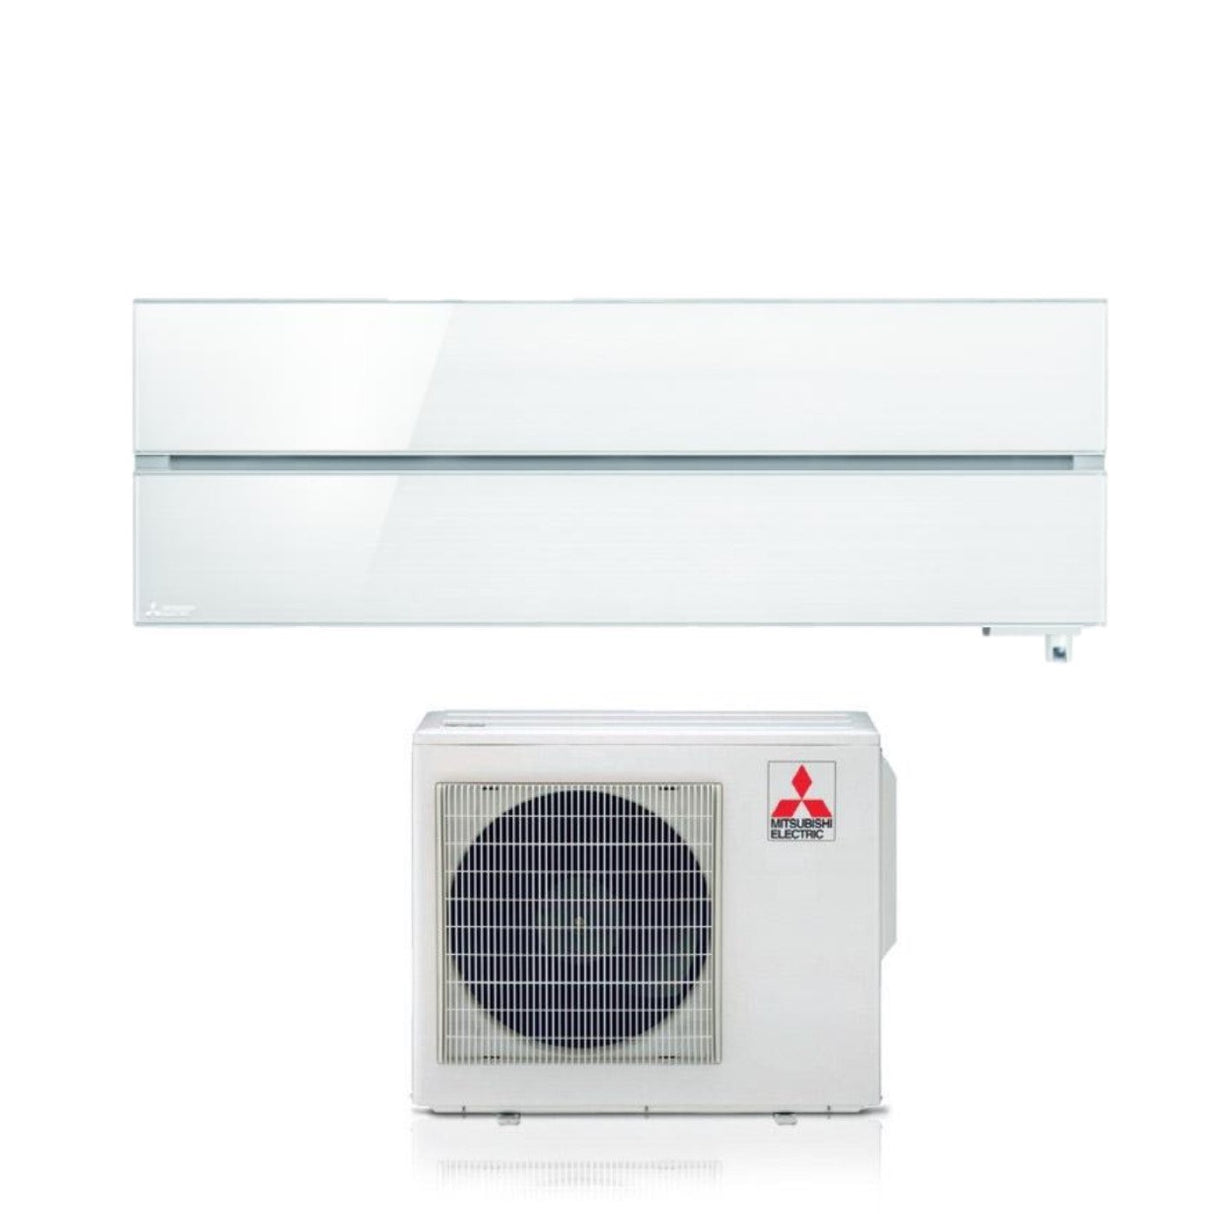 immagine-1-mitsubishi-electric-climatizzatore-condizionatore-mitsubishi-electric-inverter-serie-kirigamine-style-18000-btu-msz-ln50vgw-white-r-32-wi-fi-integrato-bianco-solido-ean-8059657006080